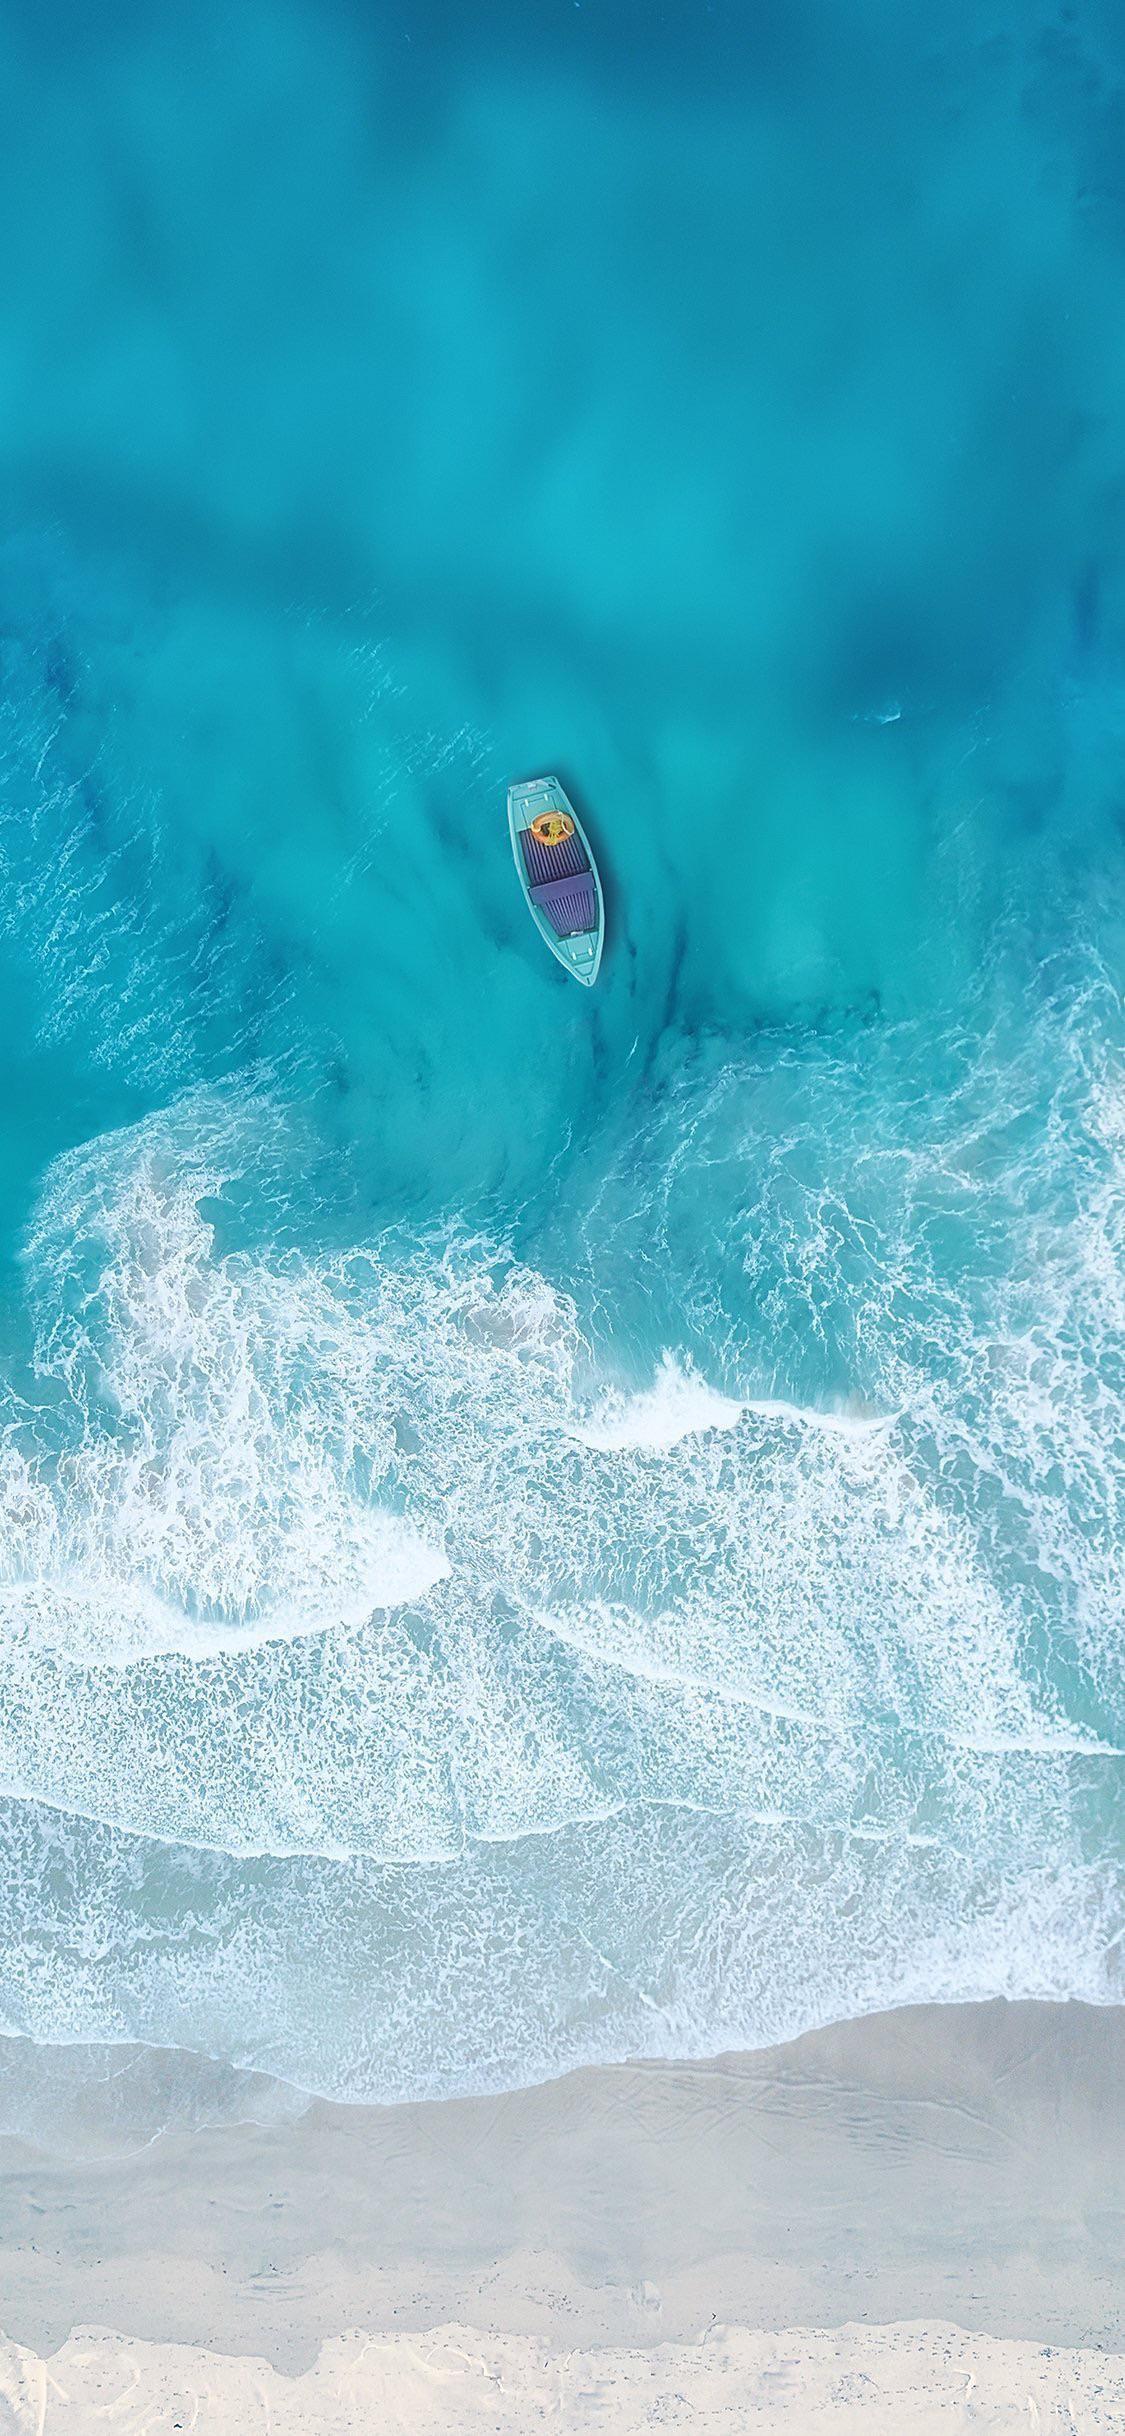 بک گراند زیبای قایق روی آب های فیروزه ای دریا از نمای بالا